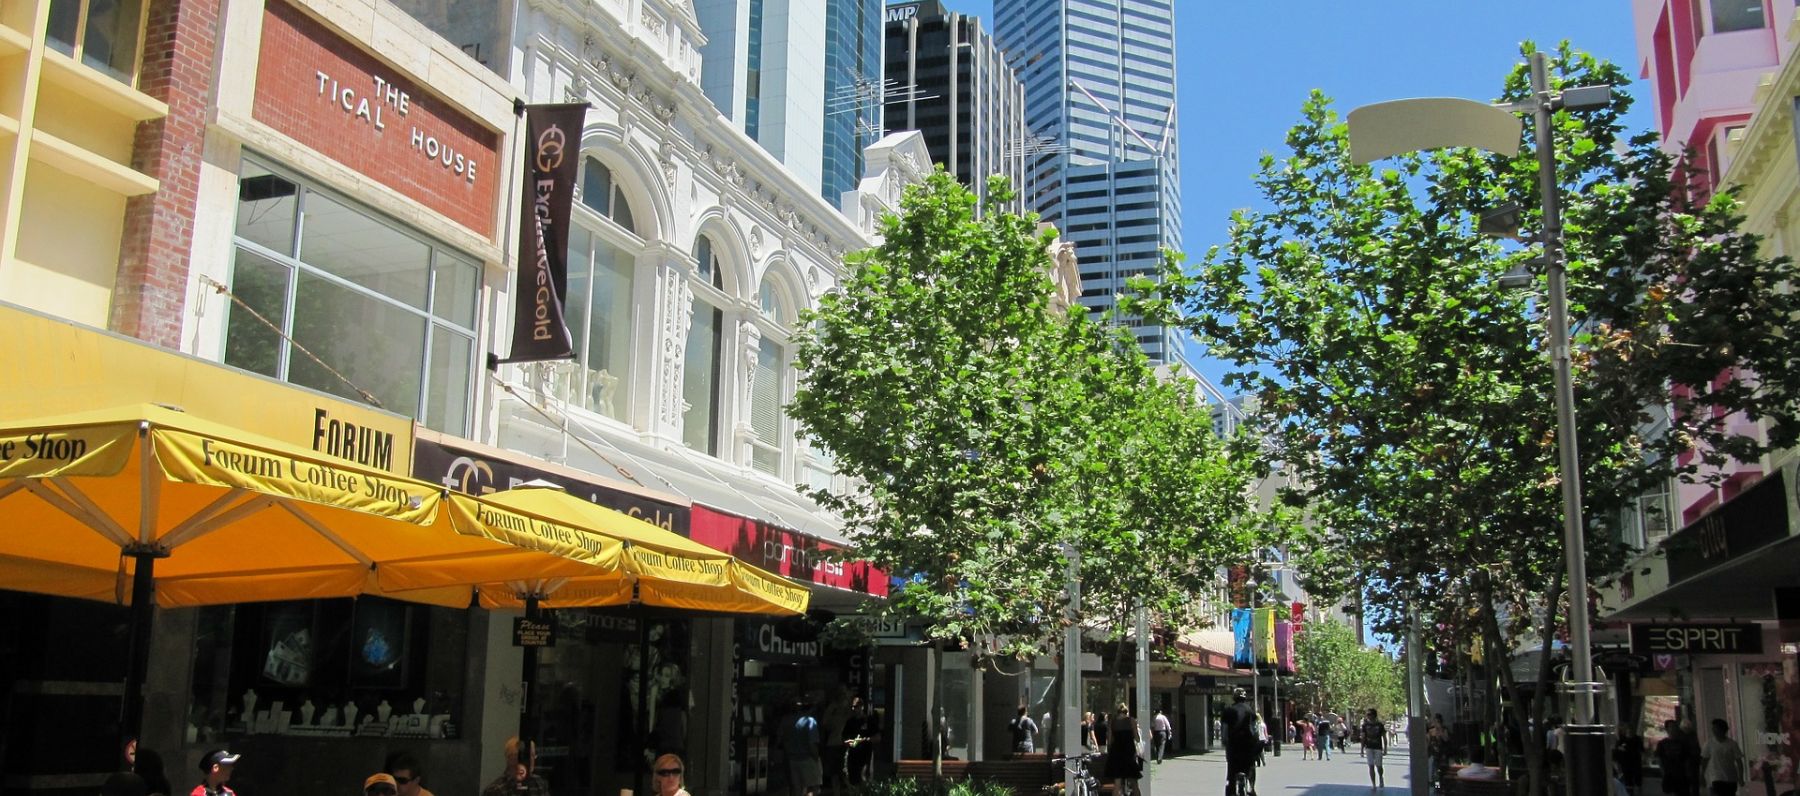 Shopping street scene in Perth